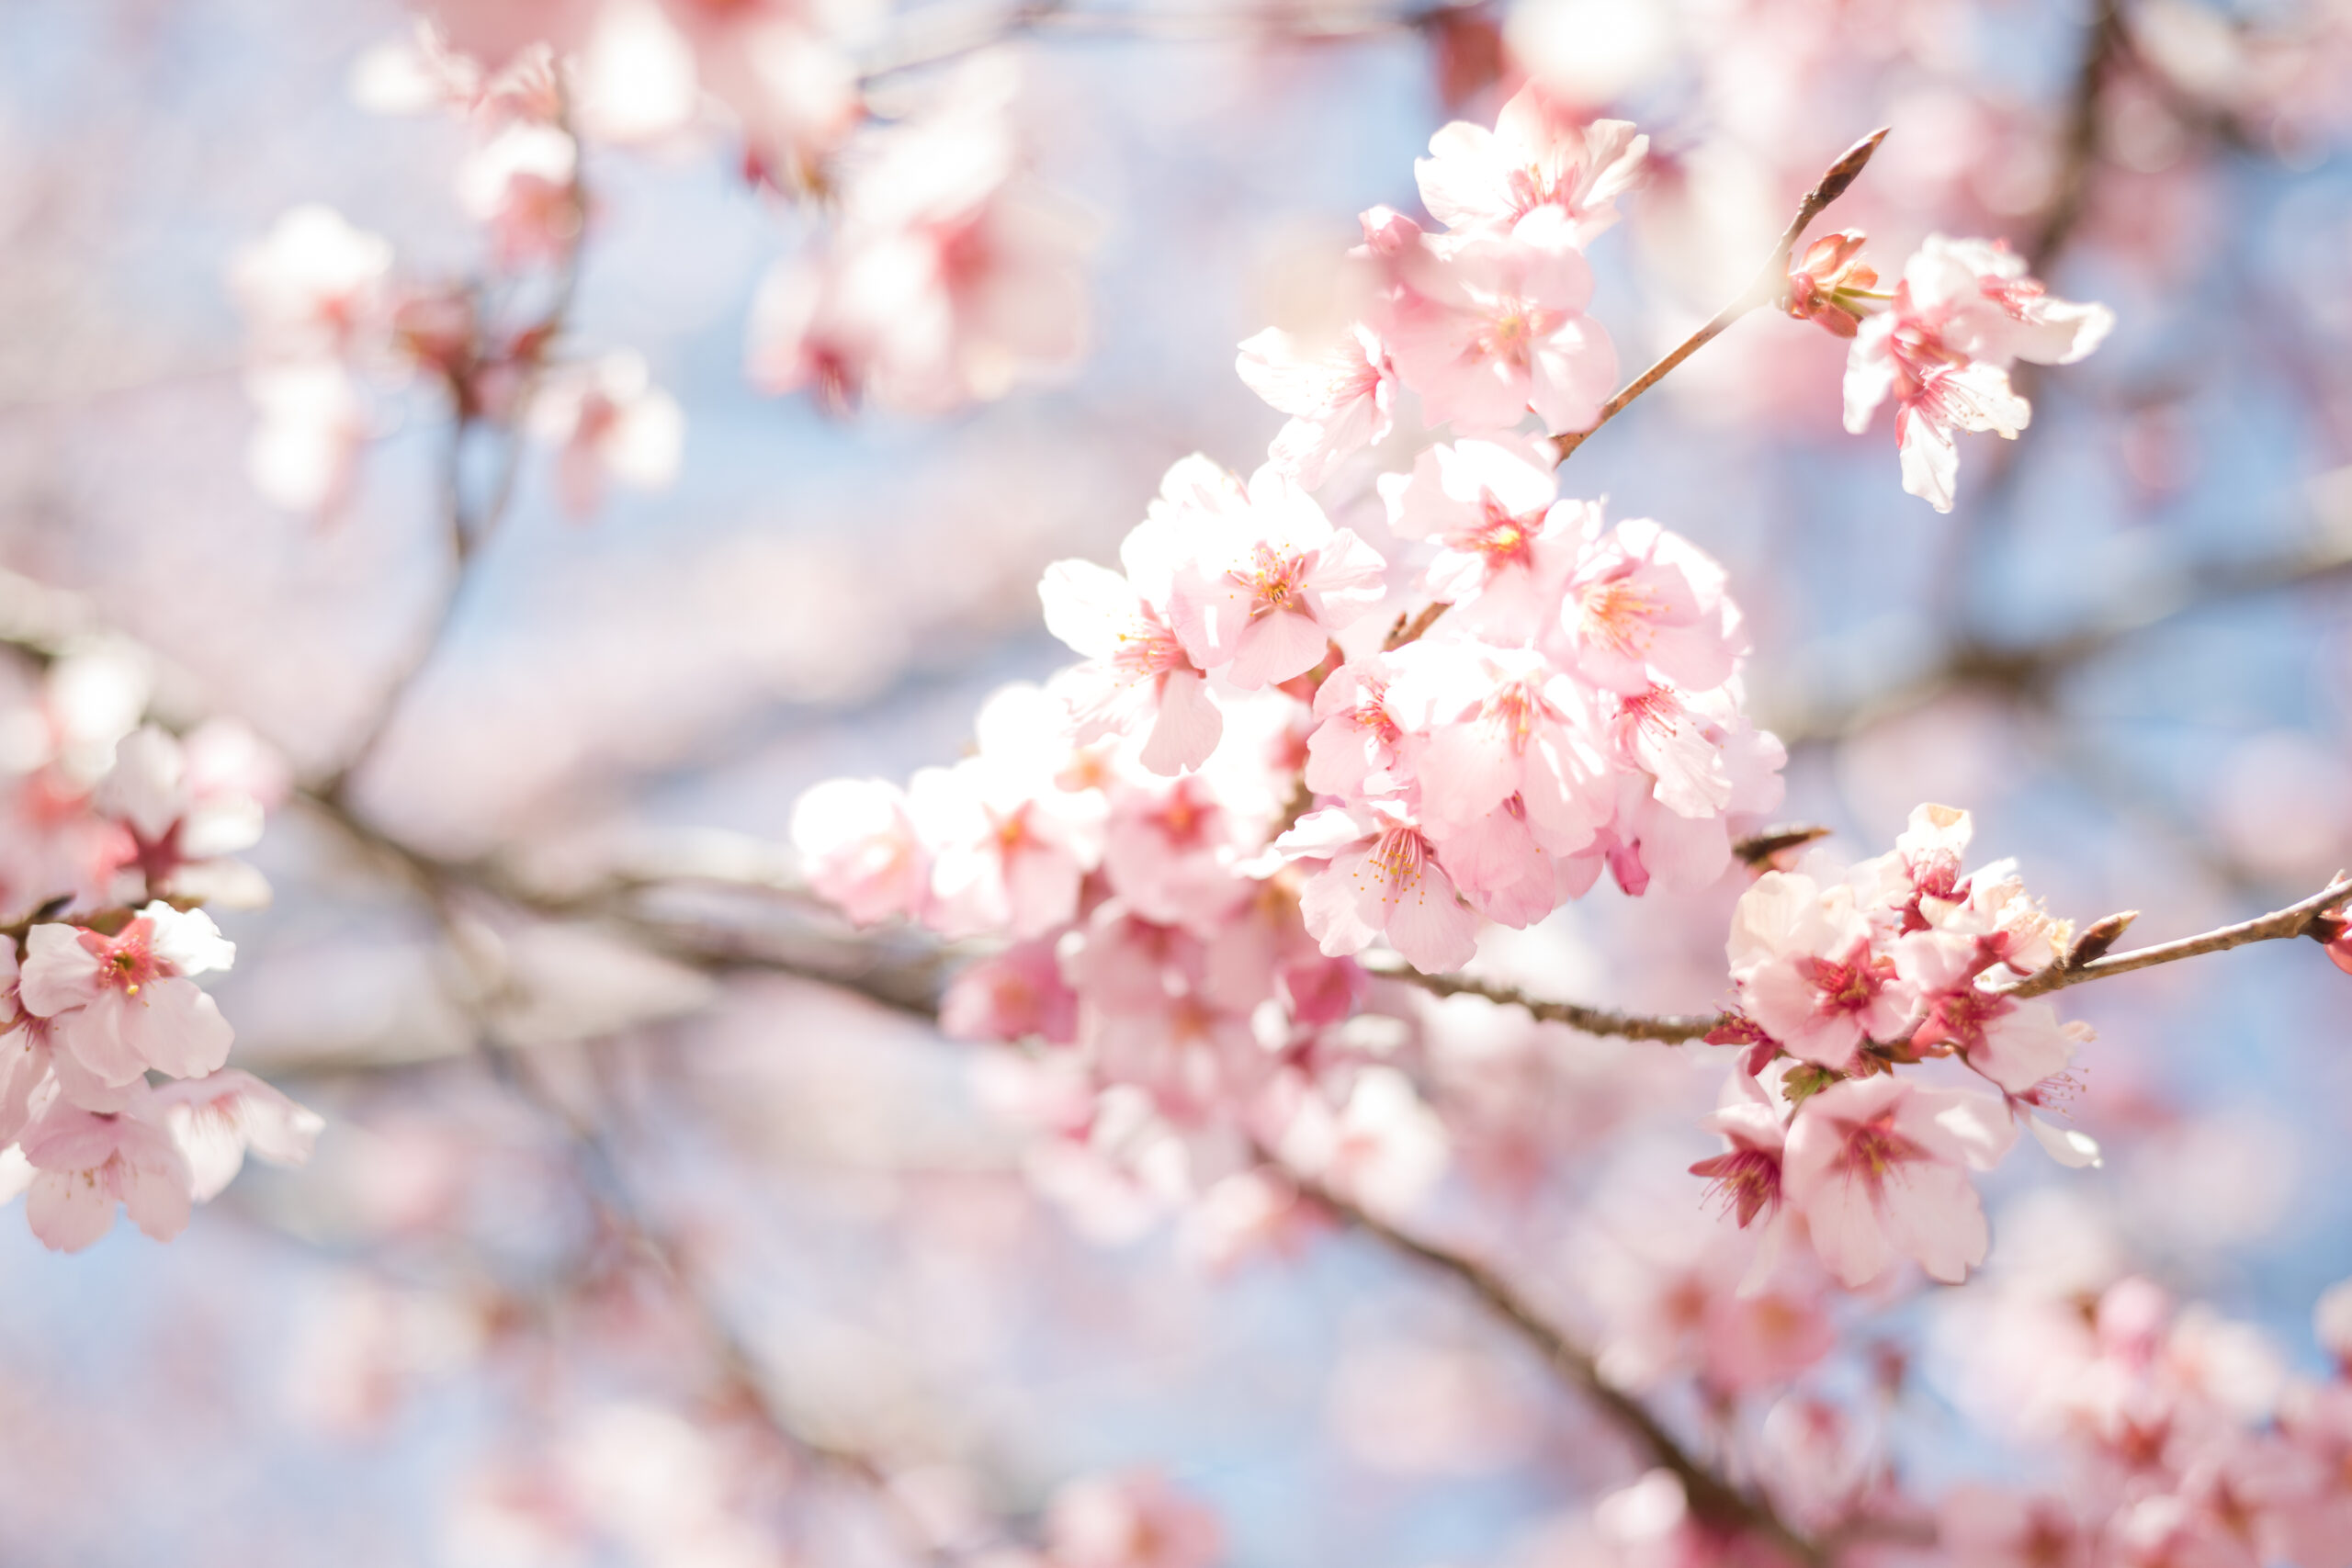 Cherry Blossom Festival Location